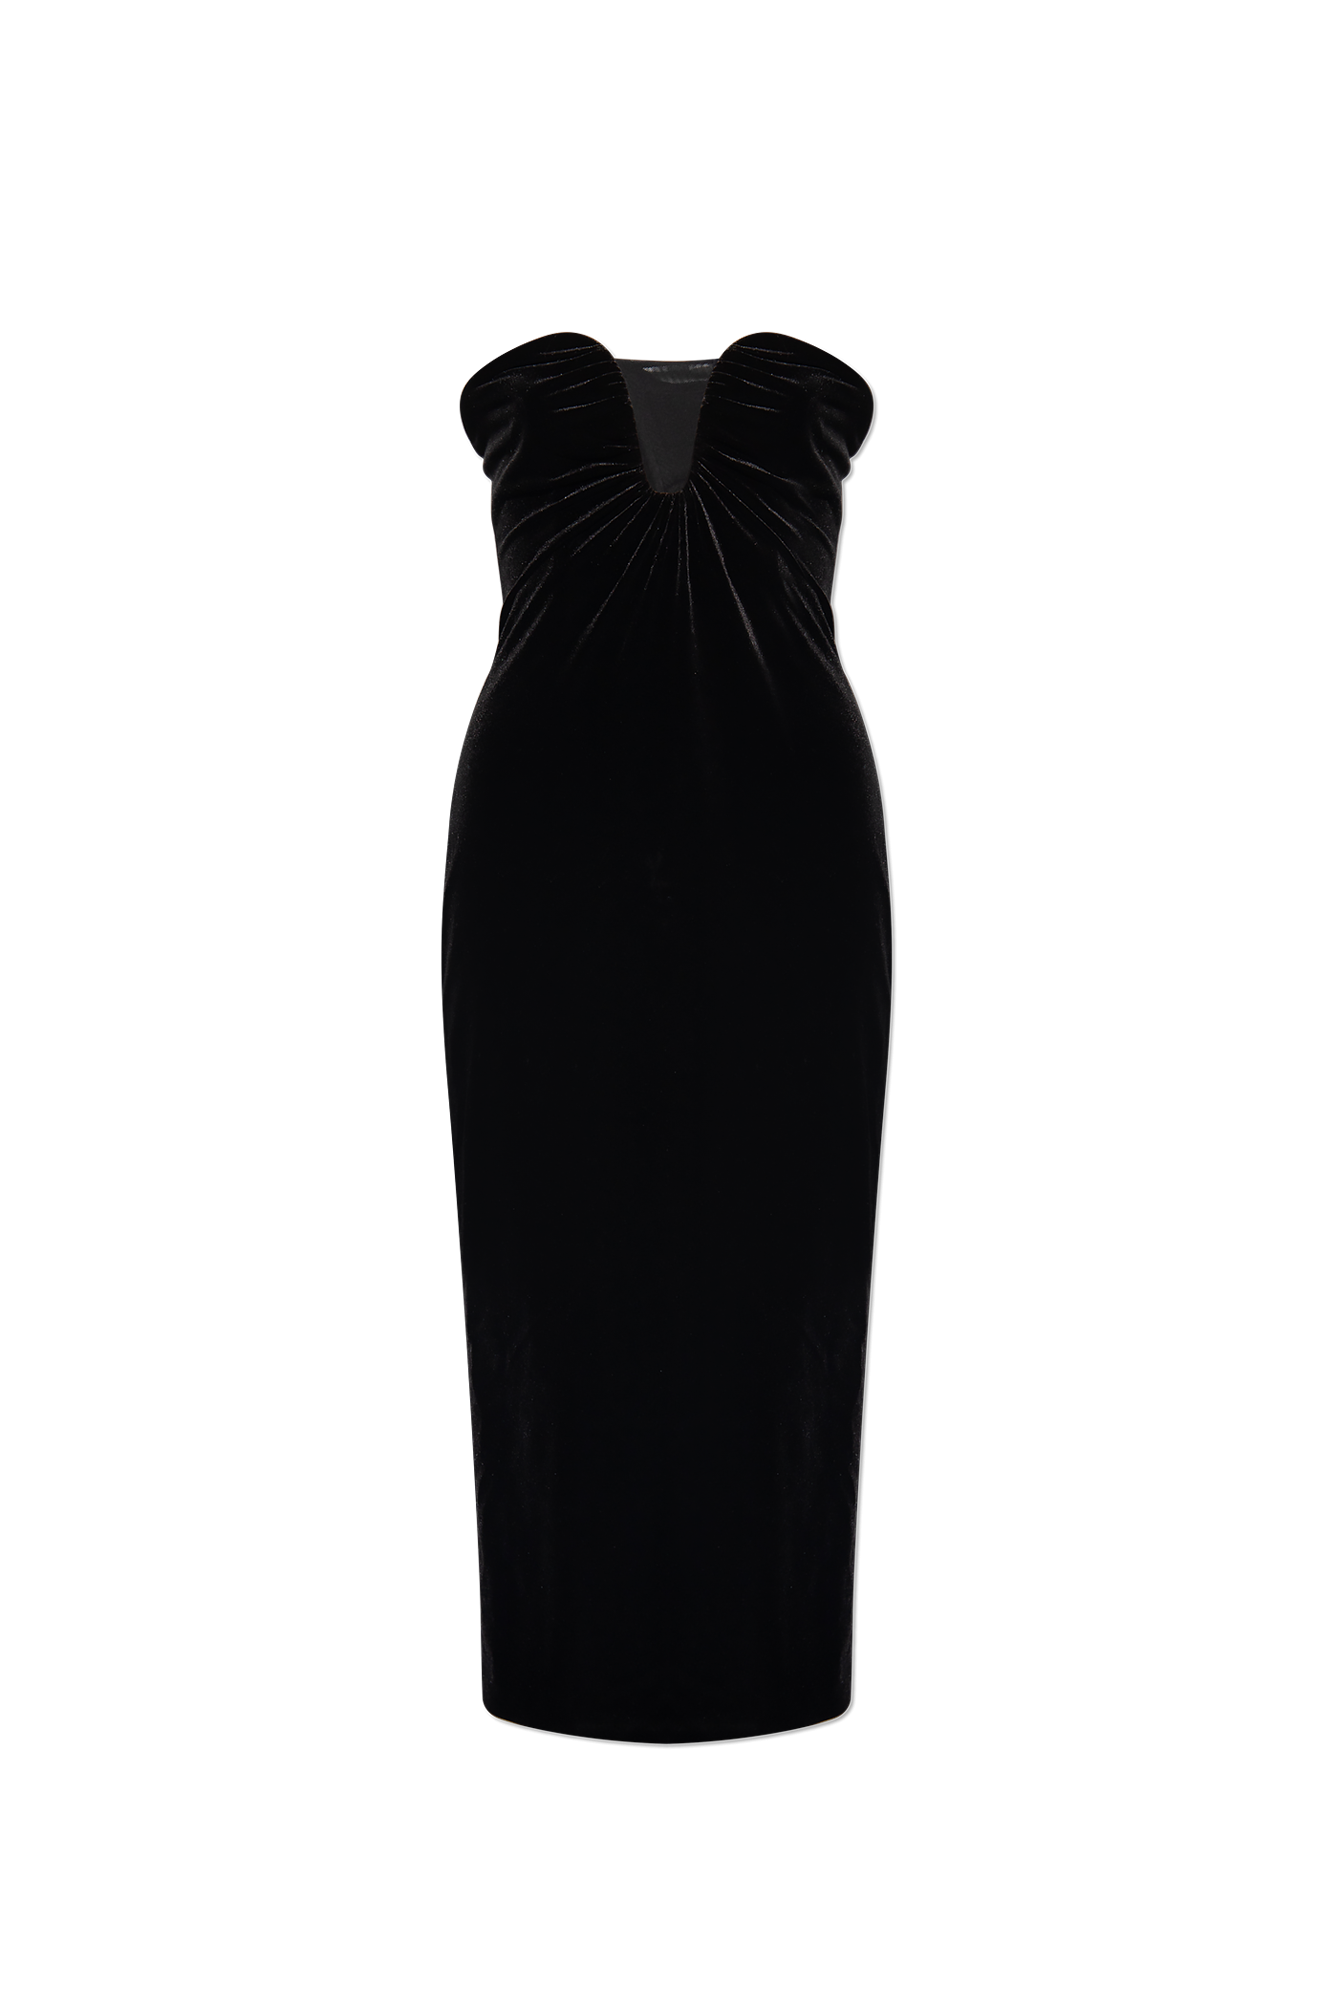 Casette Strapless Slip Dress In Black